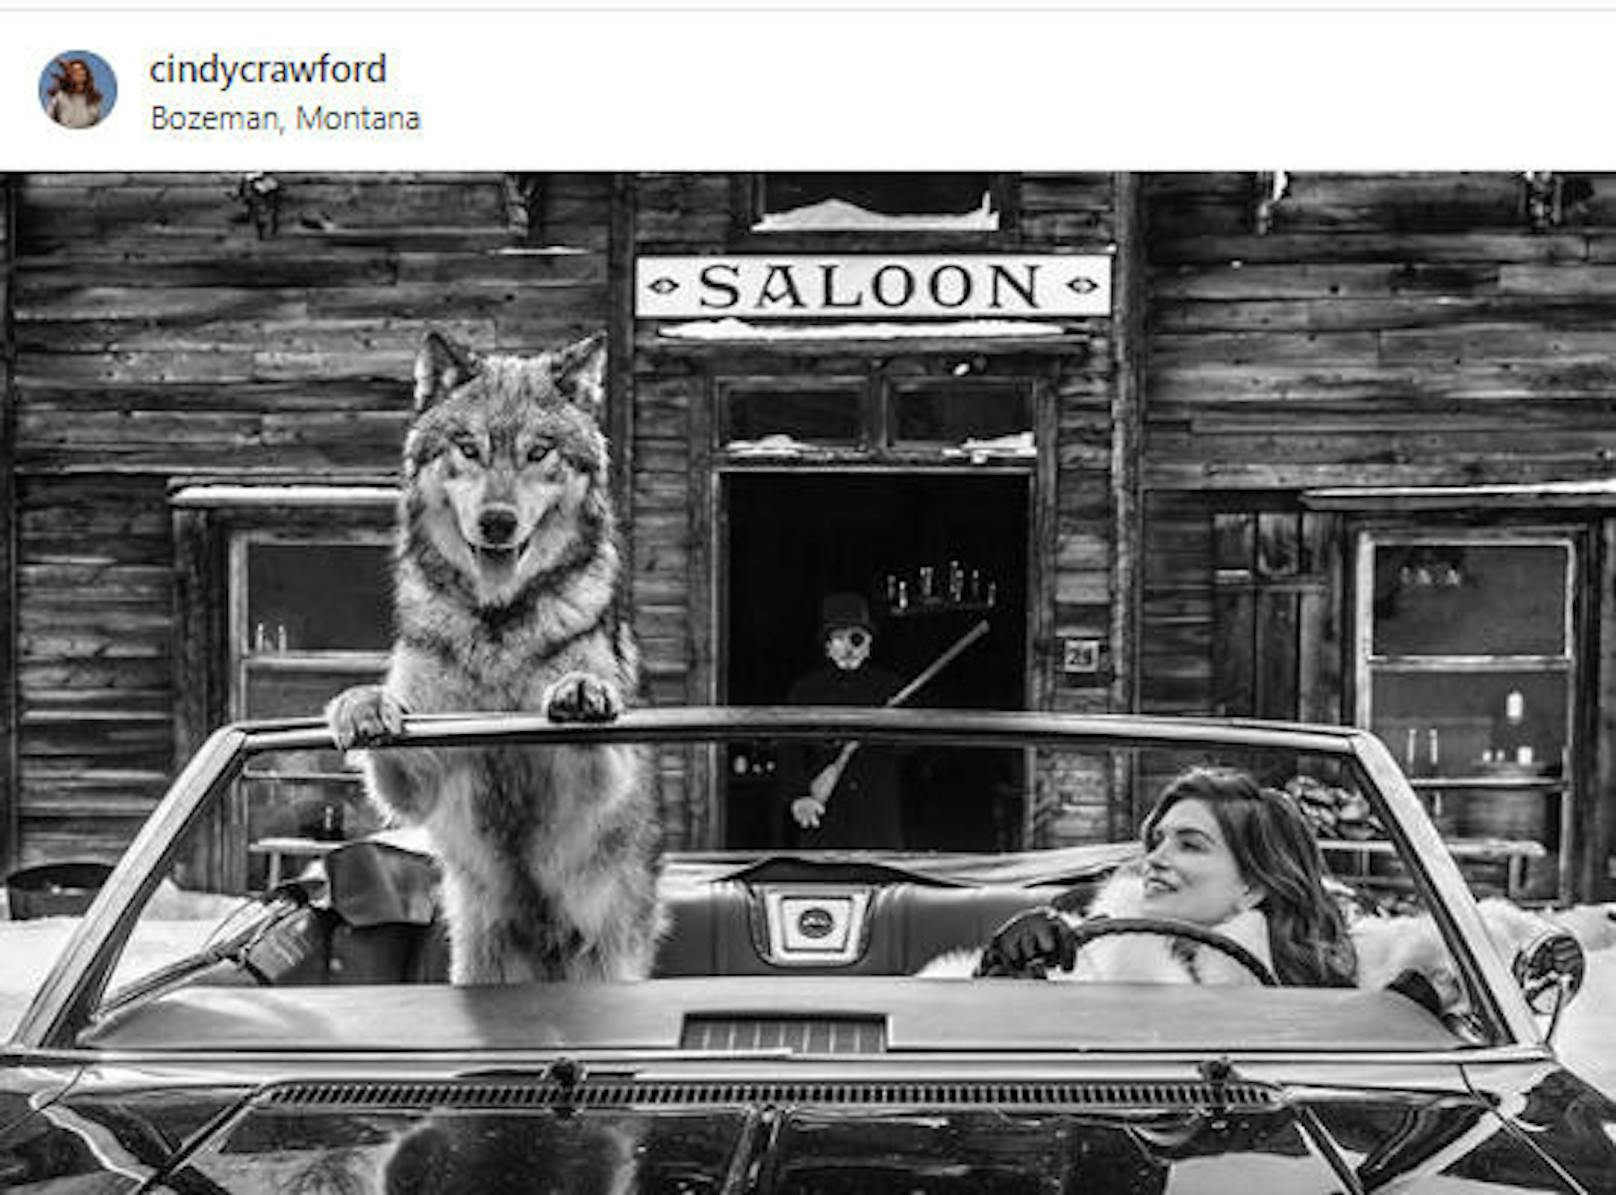 07.02.2019: Die mit dem Wolf fährt: Cindy Crawford freut sich ganz offensichtlich, beim Fotoshooting nicht im Mittelpunkt zu stehen. Beeindruckend!